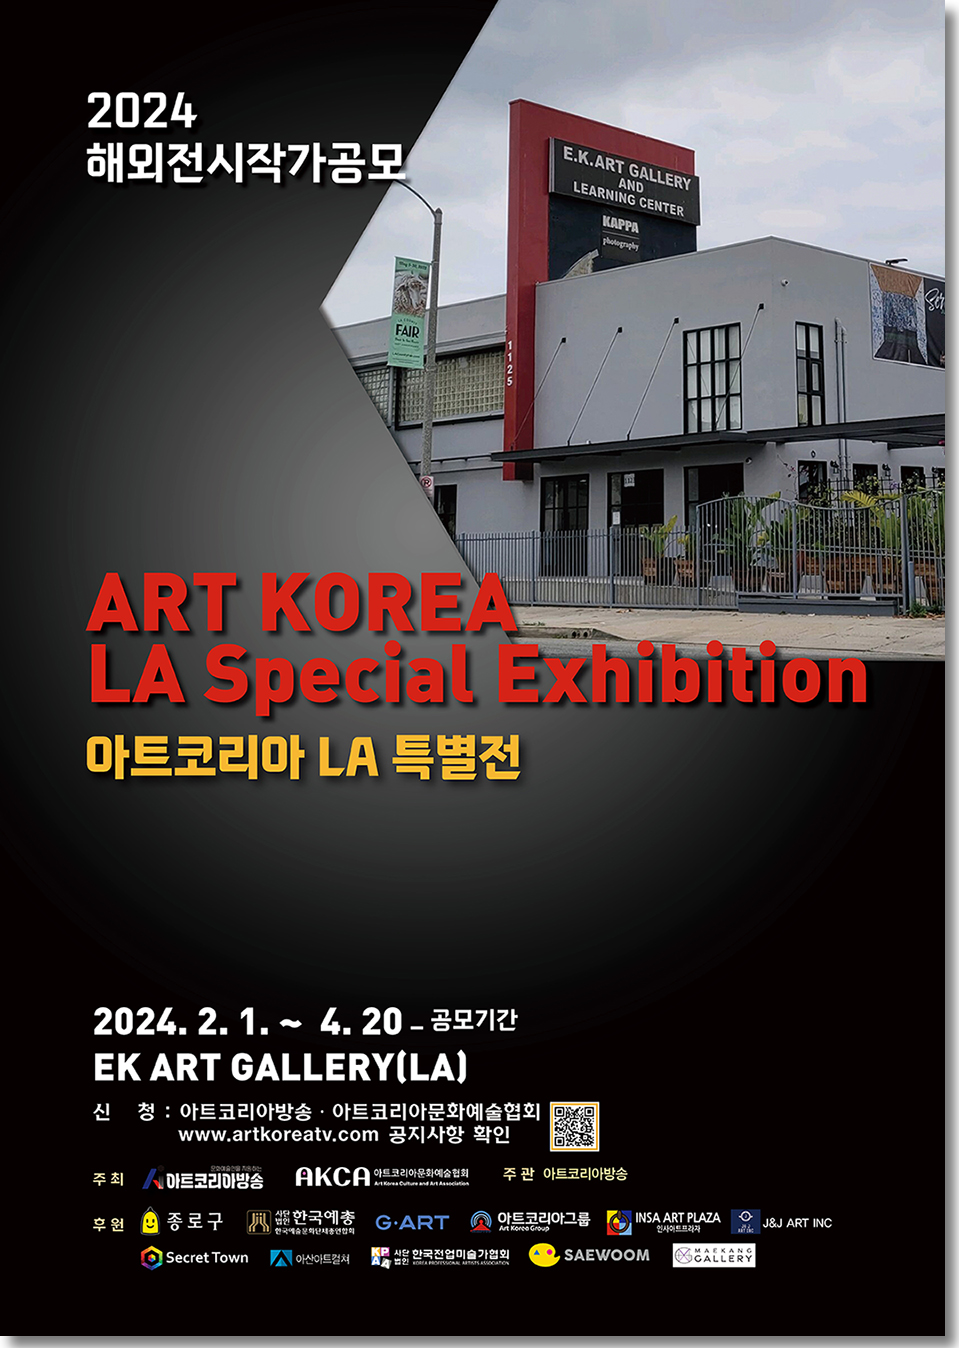 2024 Art Korea LA Special Exhibition Application